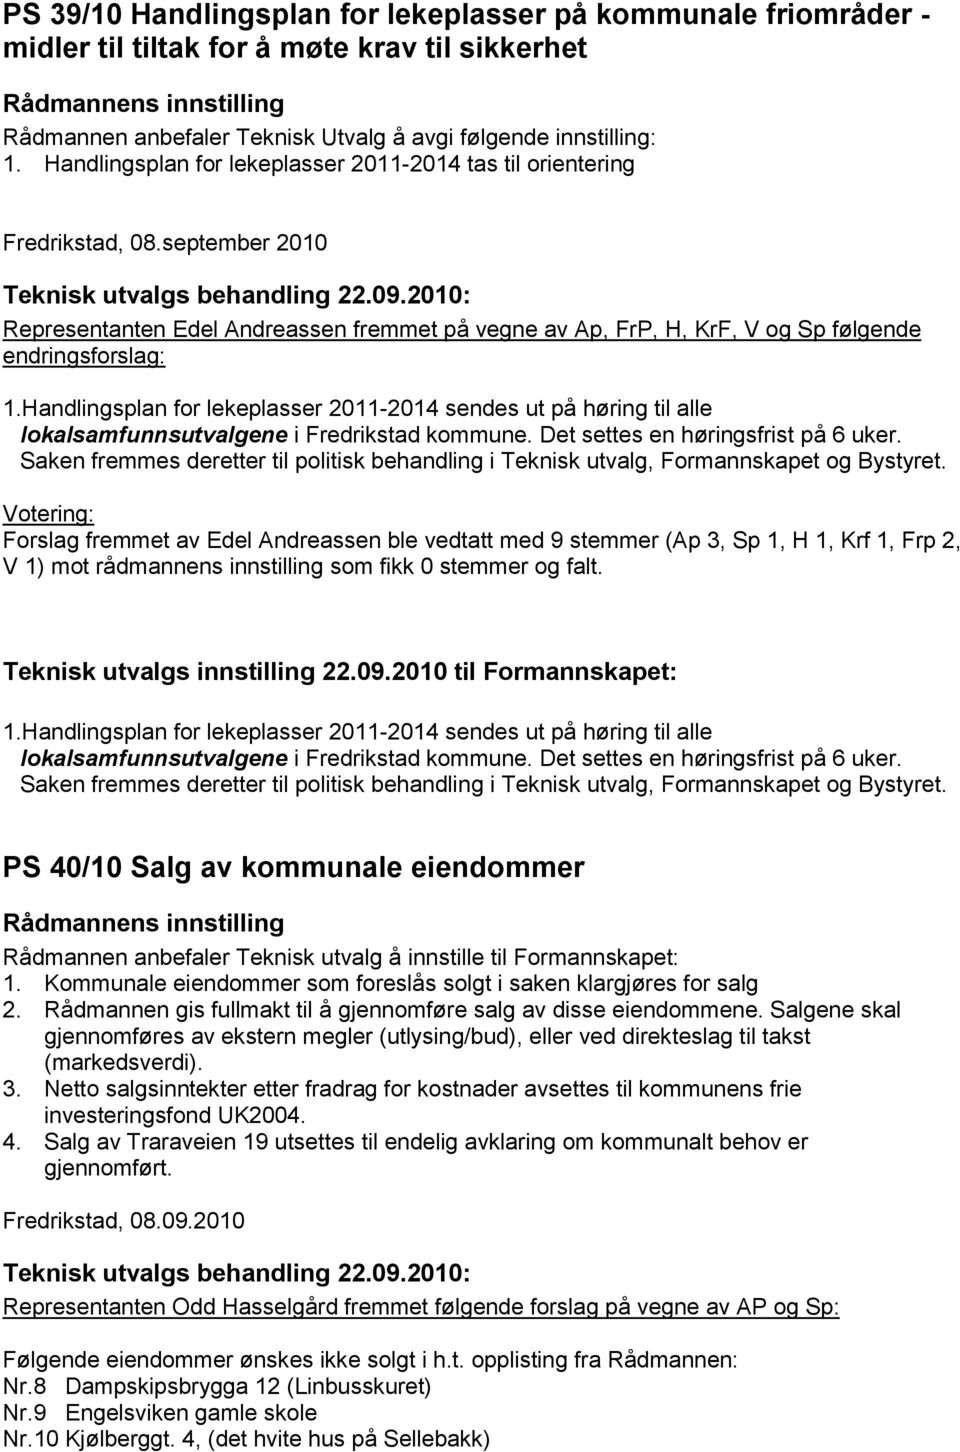 Handlingsplan for lekeplasser 2011-2014 sendes ut på høring til alle lokalsamfunnsutvalgene i Fredrikstad kommune. Det settes en høringsfrist på 6 uker.